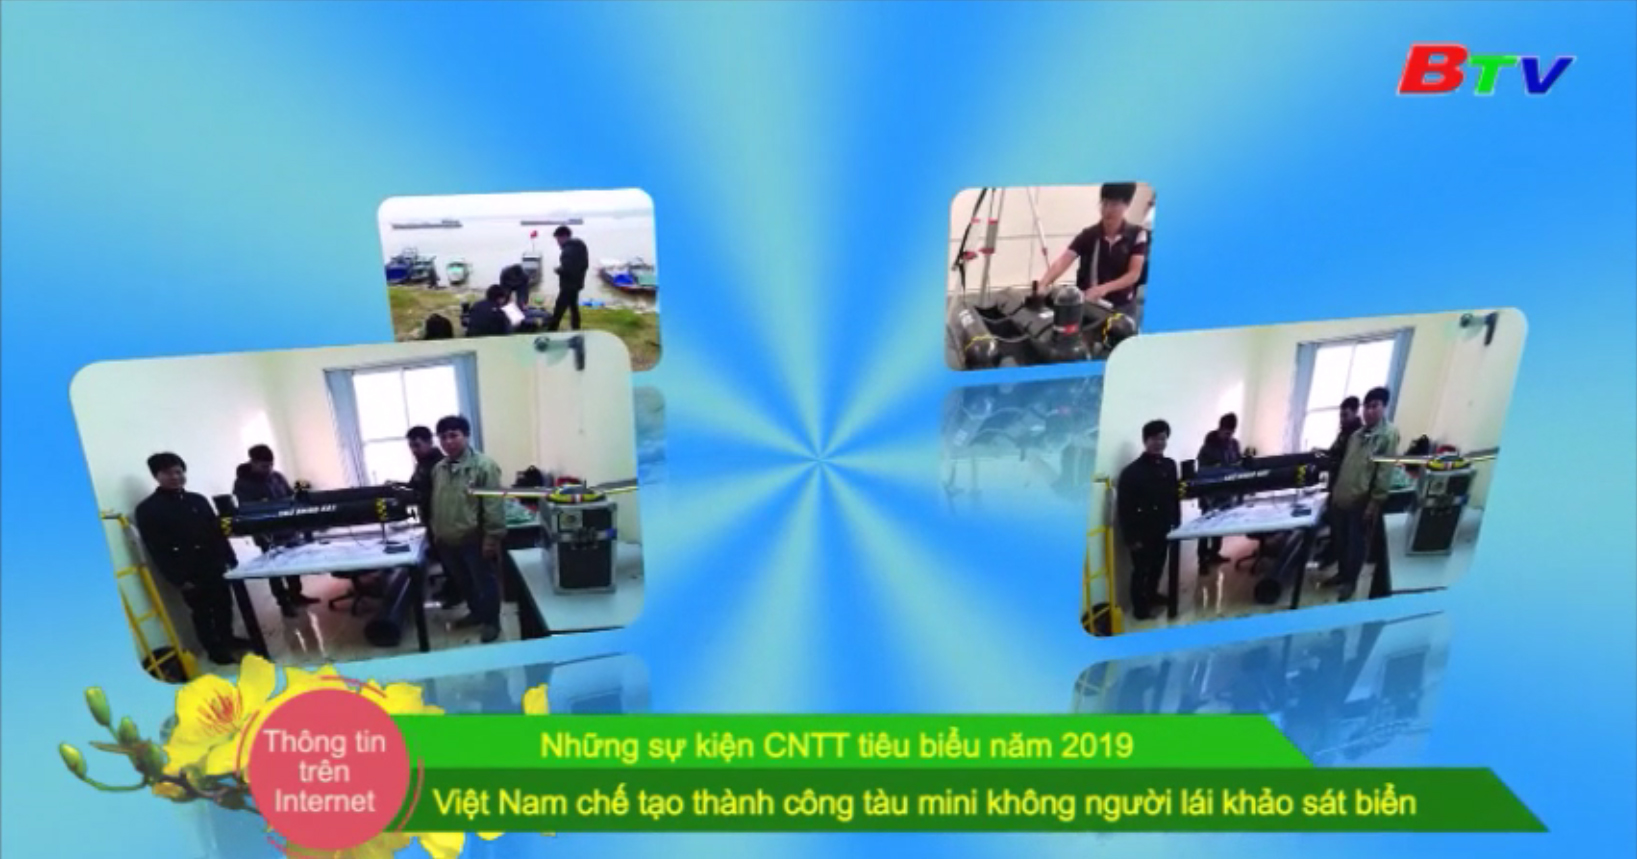 Những sự kiện CNTT tiêu biểu năm 2019 - Việt Nam chế tạo thành công tàu mini không người lái khảo sát biển